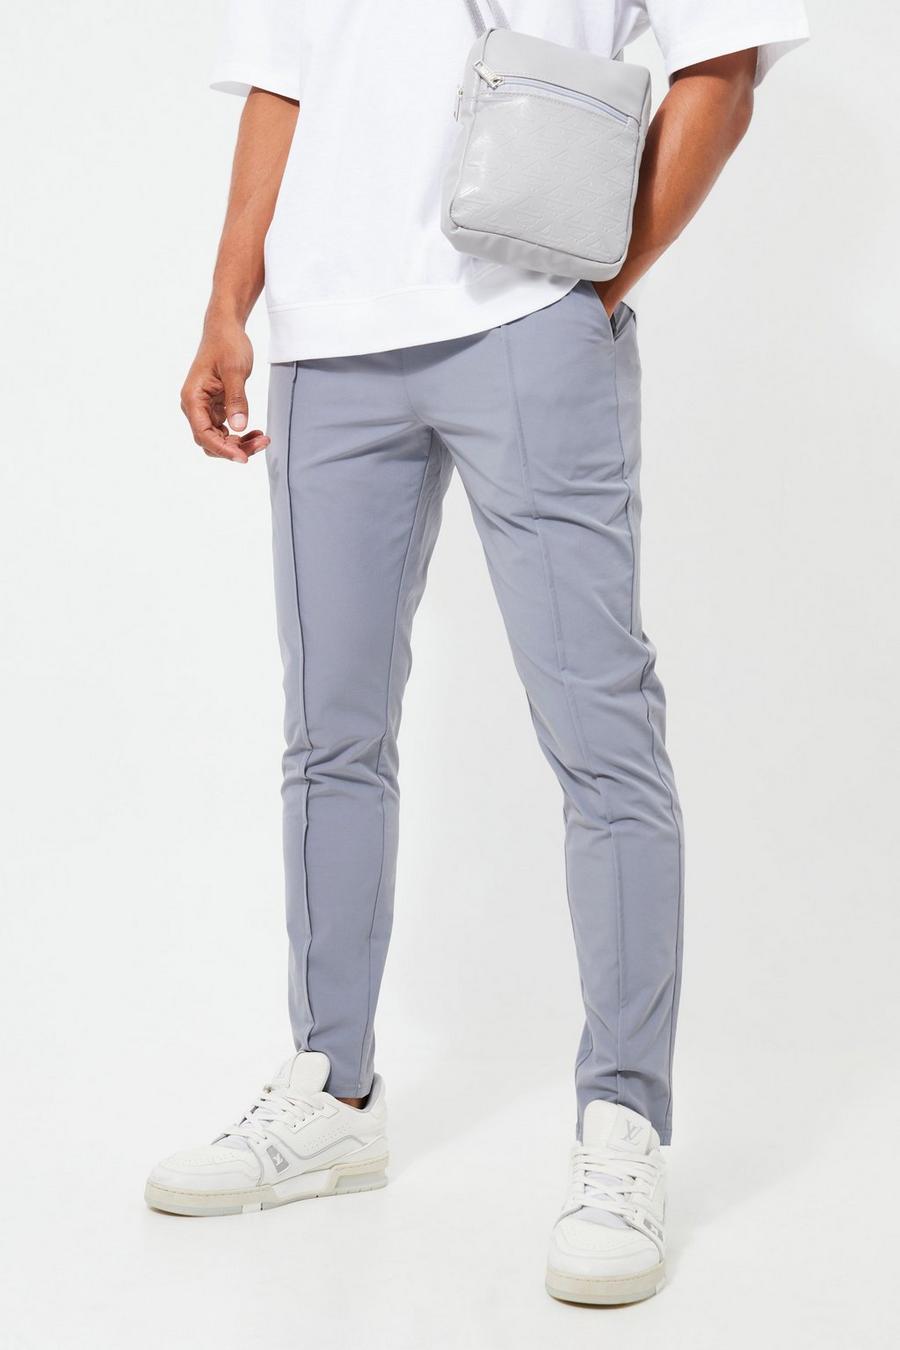 Pantalón pitillo elástico ligero con alforza, Light grey